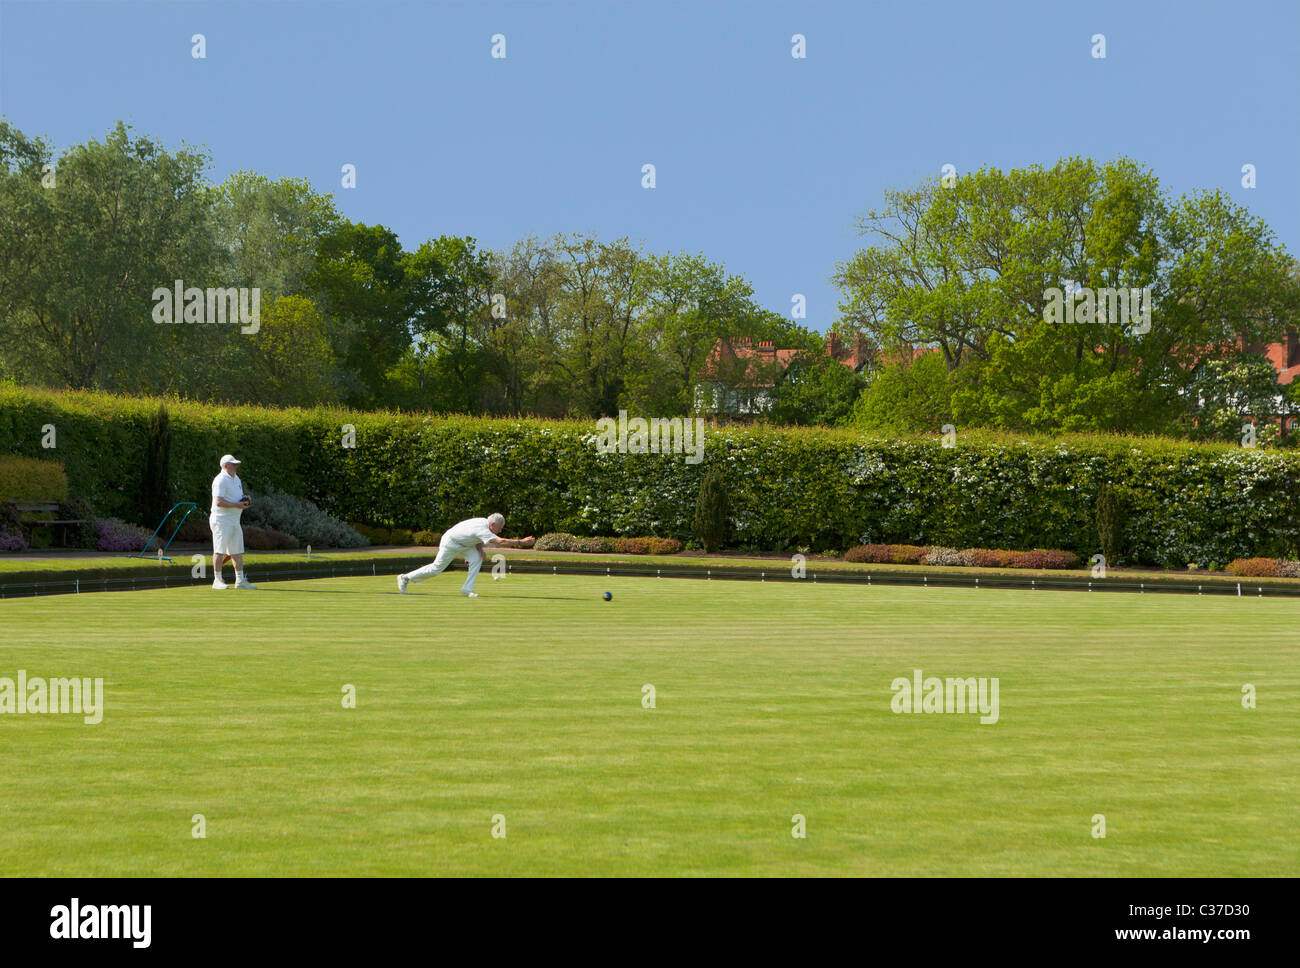 Bowling Green in Hampstead Heath, London, UK Stockfoto